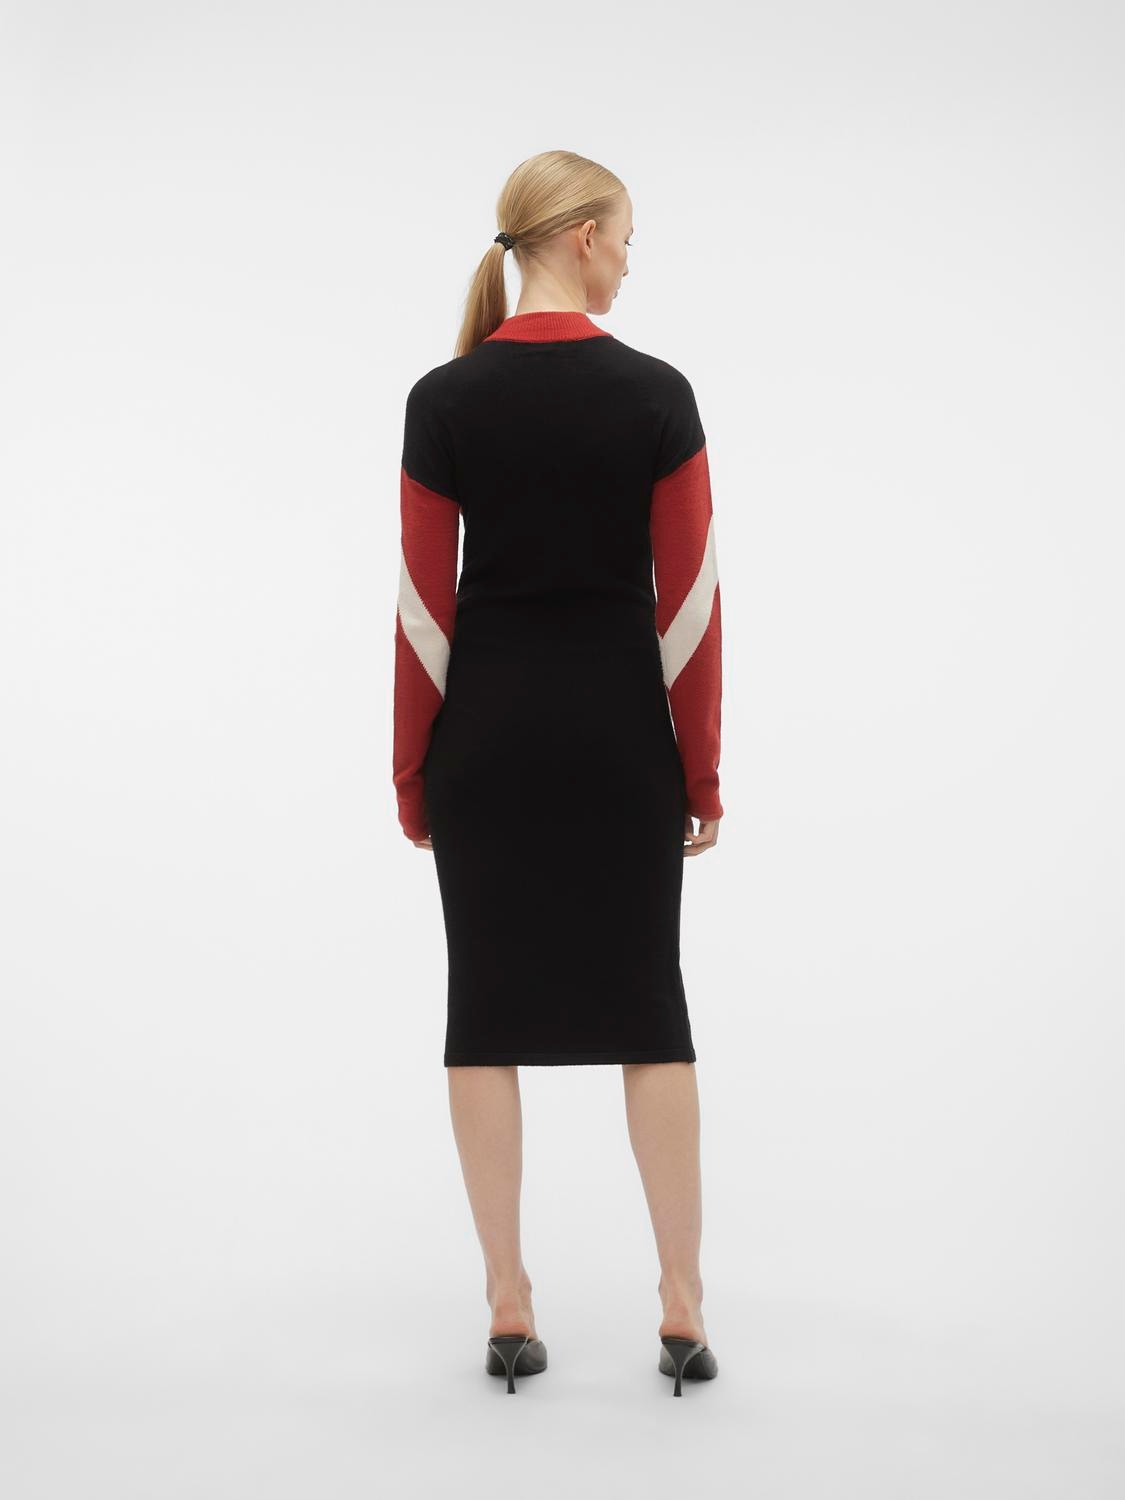 Vero Moda VMNANCY Lange jurk -Red Ochre - 10303186